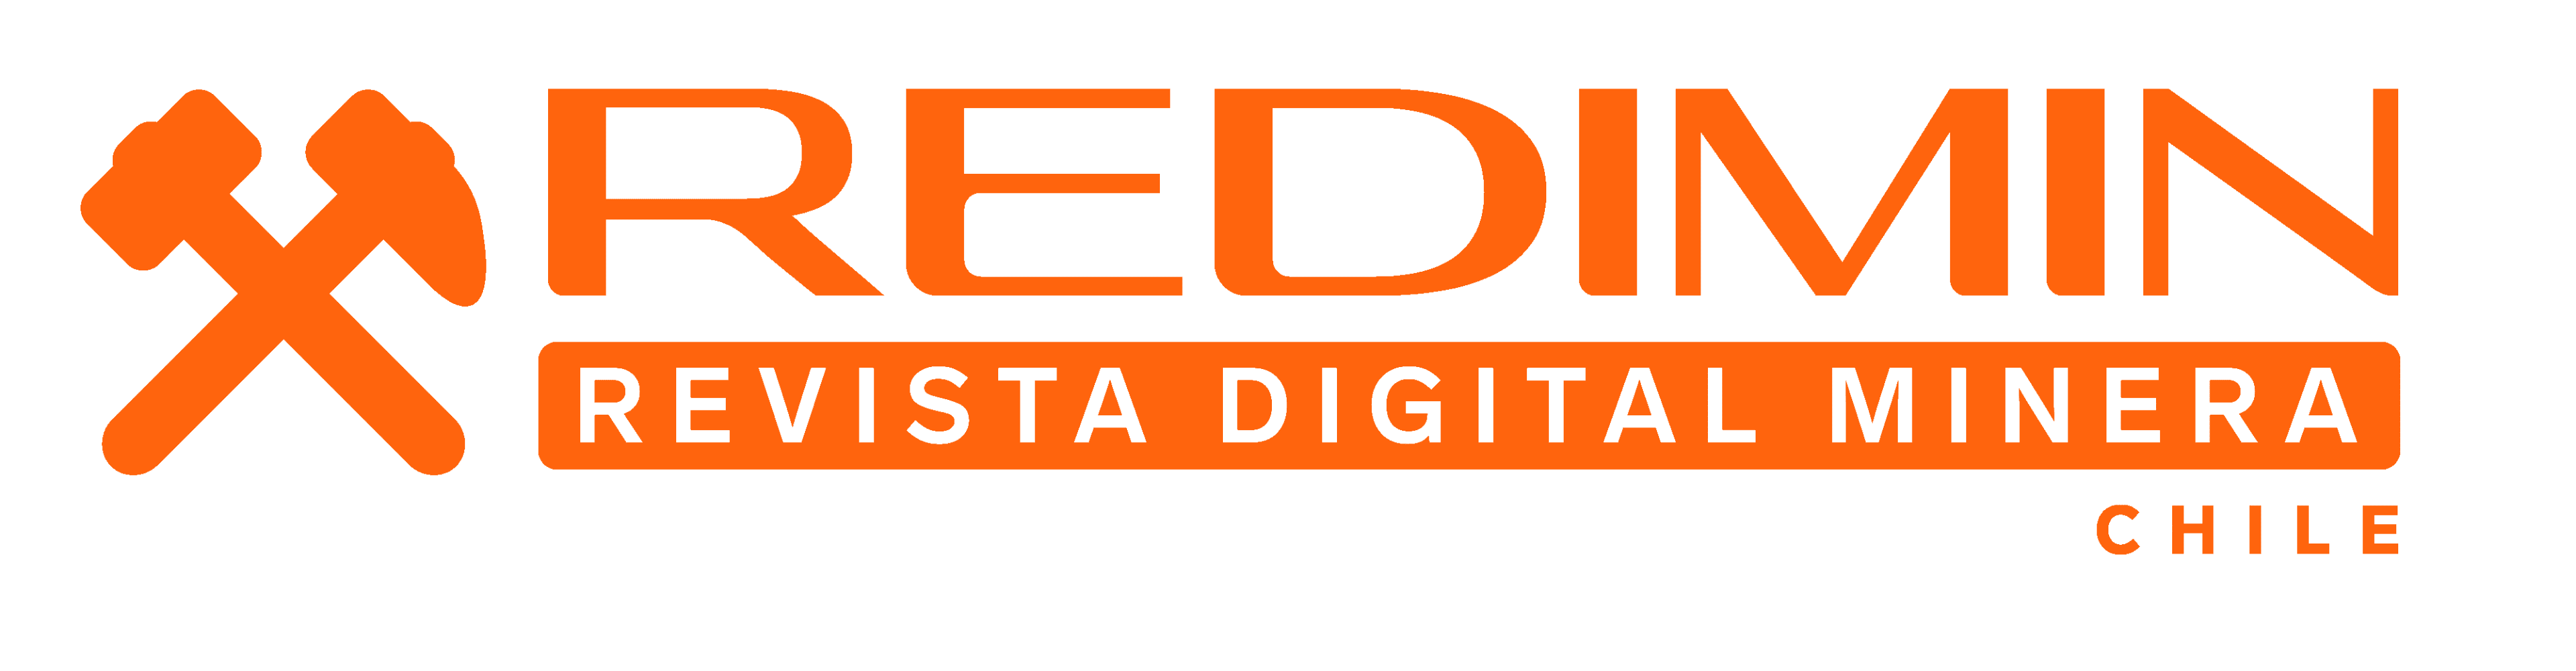 Logo Revista Digital Minera REDIMIN